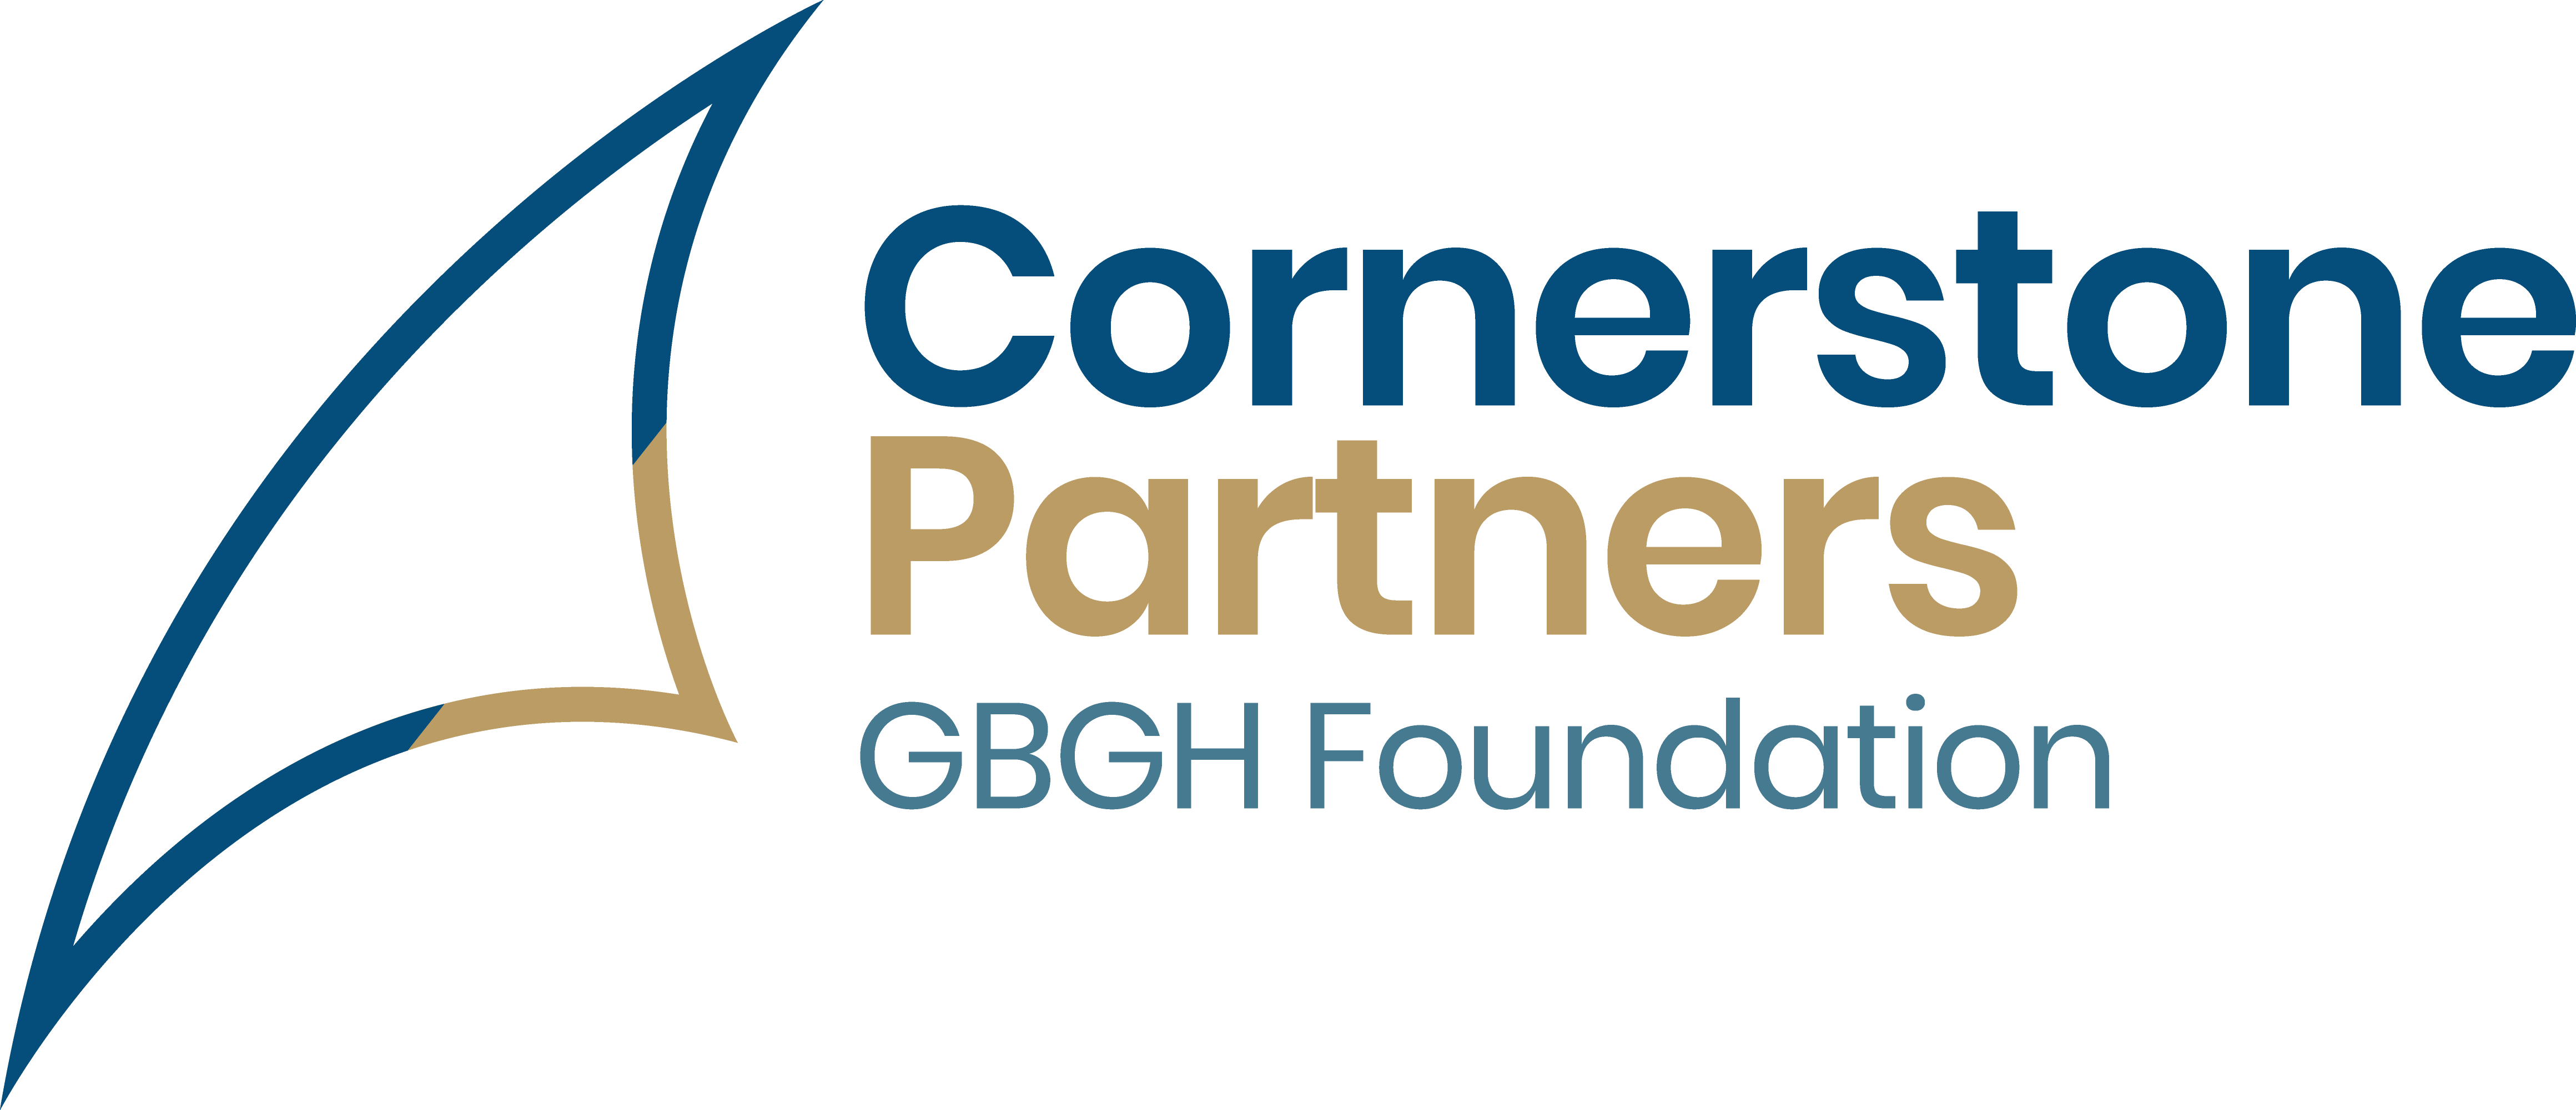 Cornerstone Partners logo